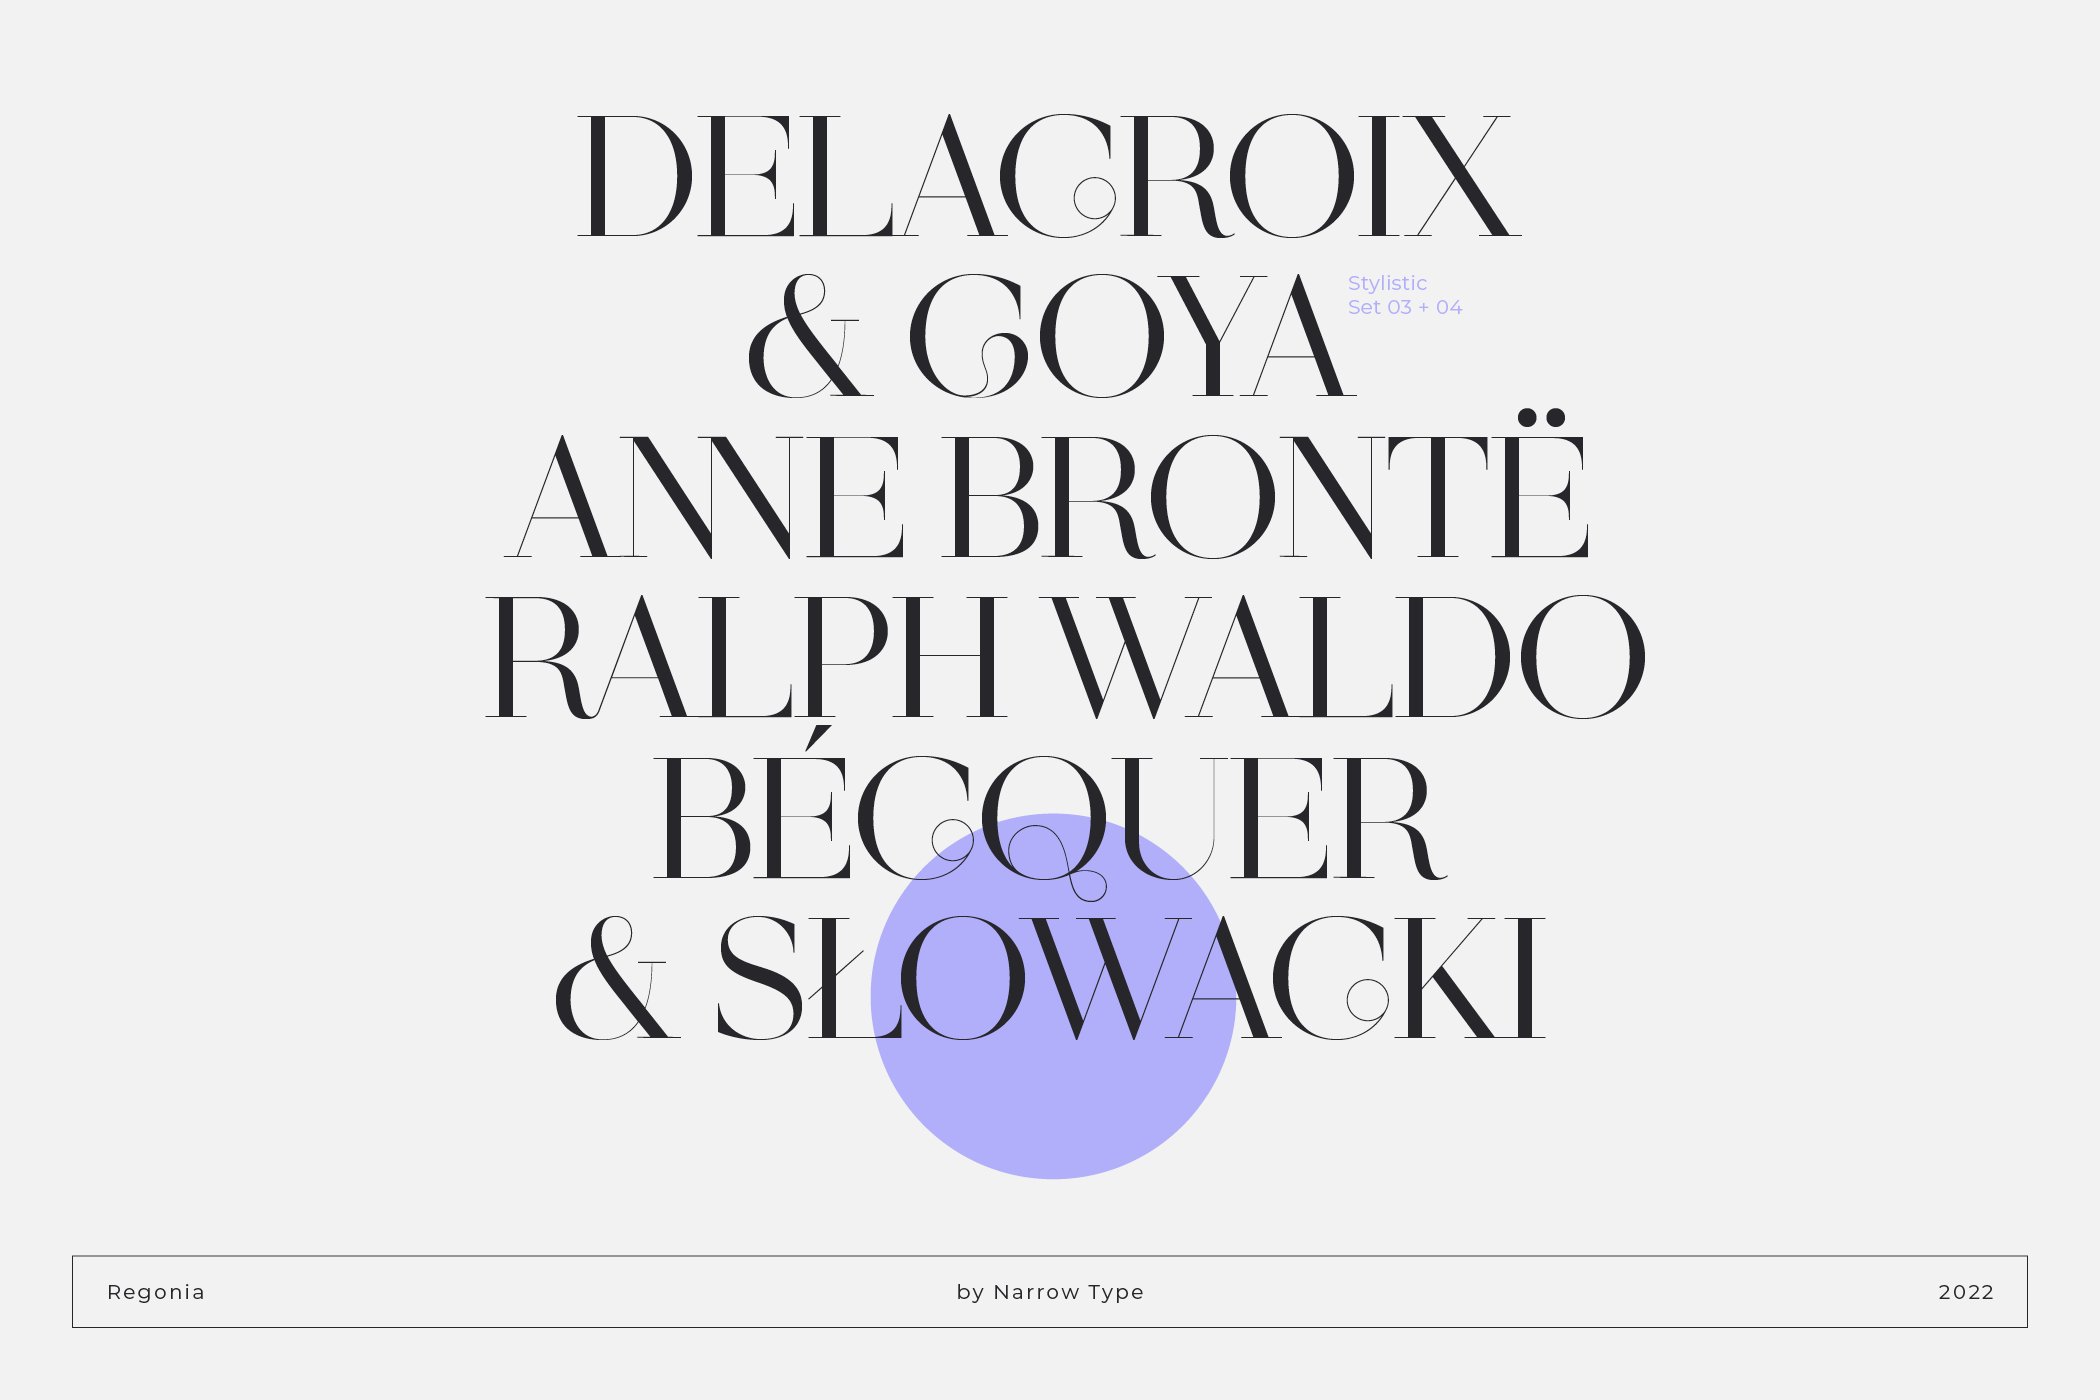 Reglona - High Contrast Serif